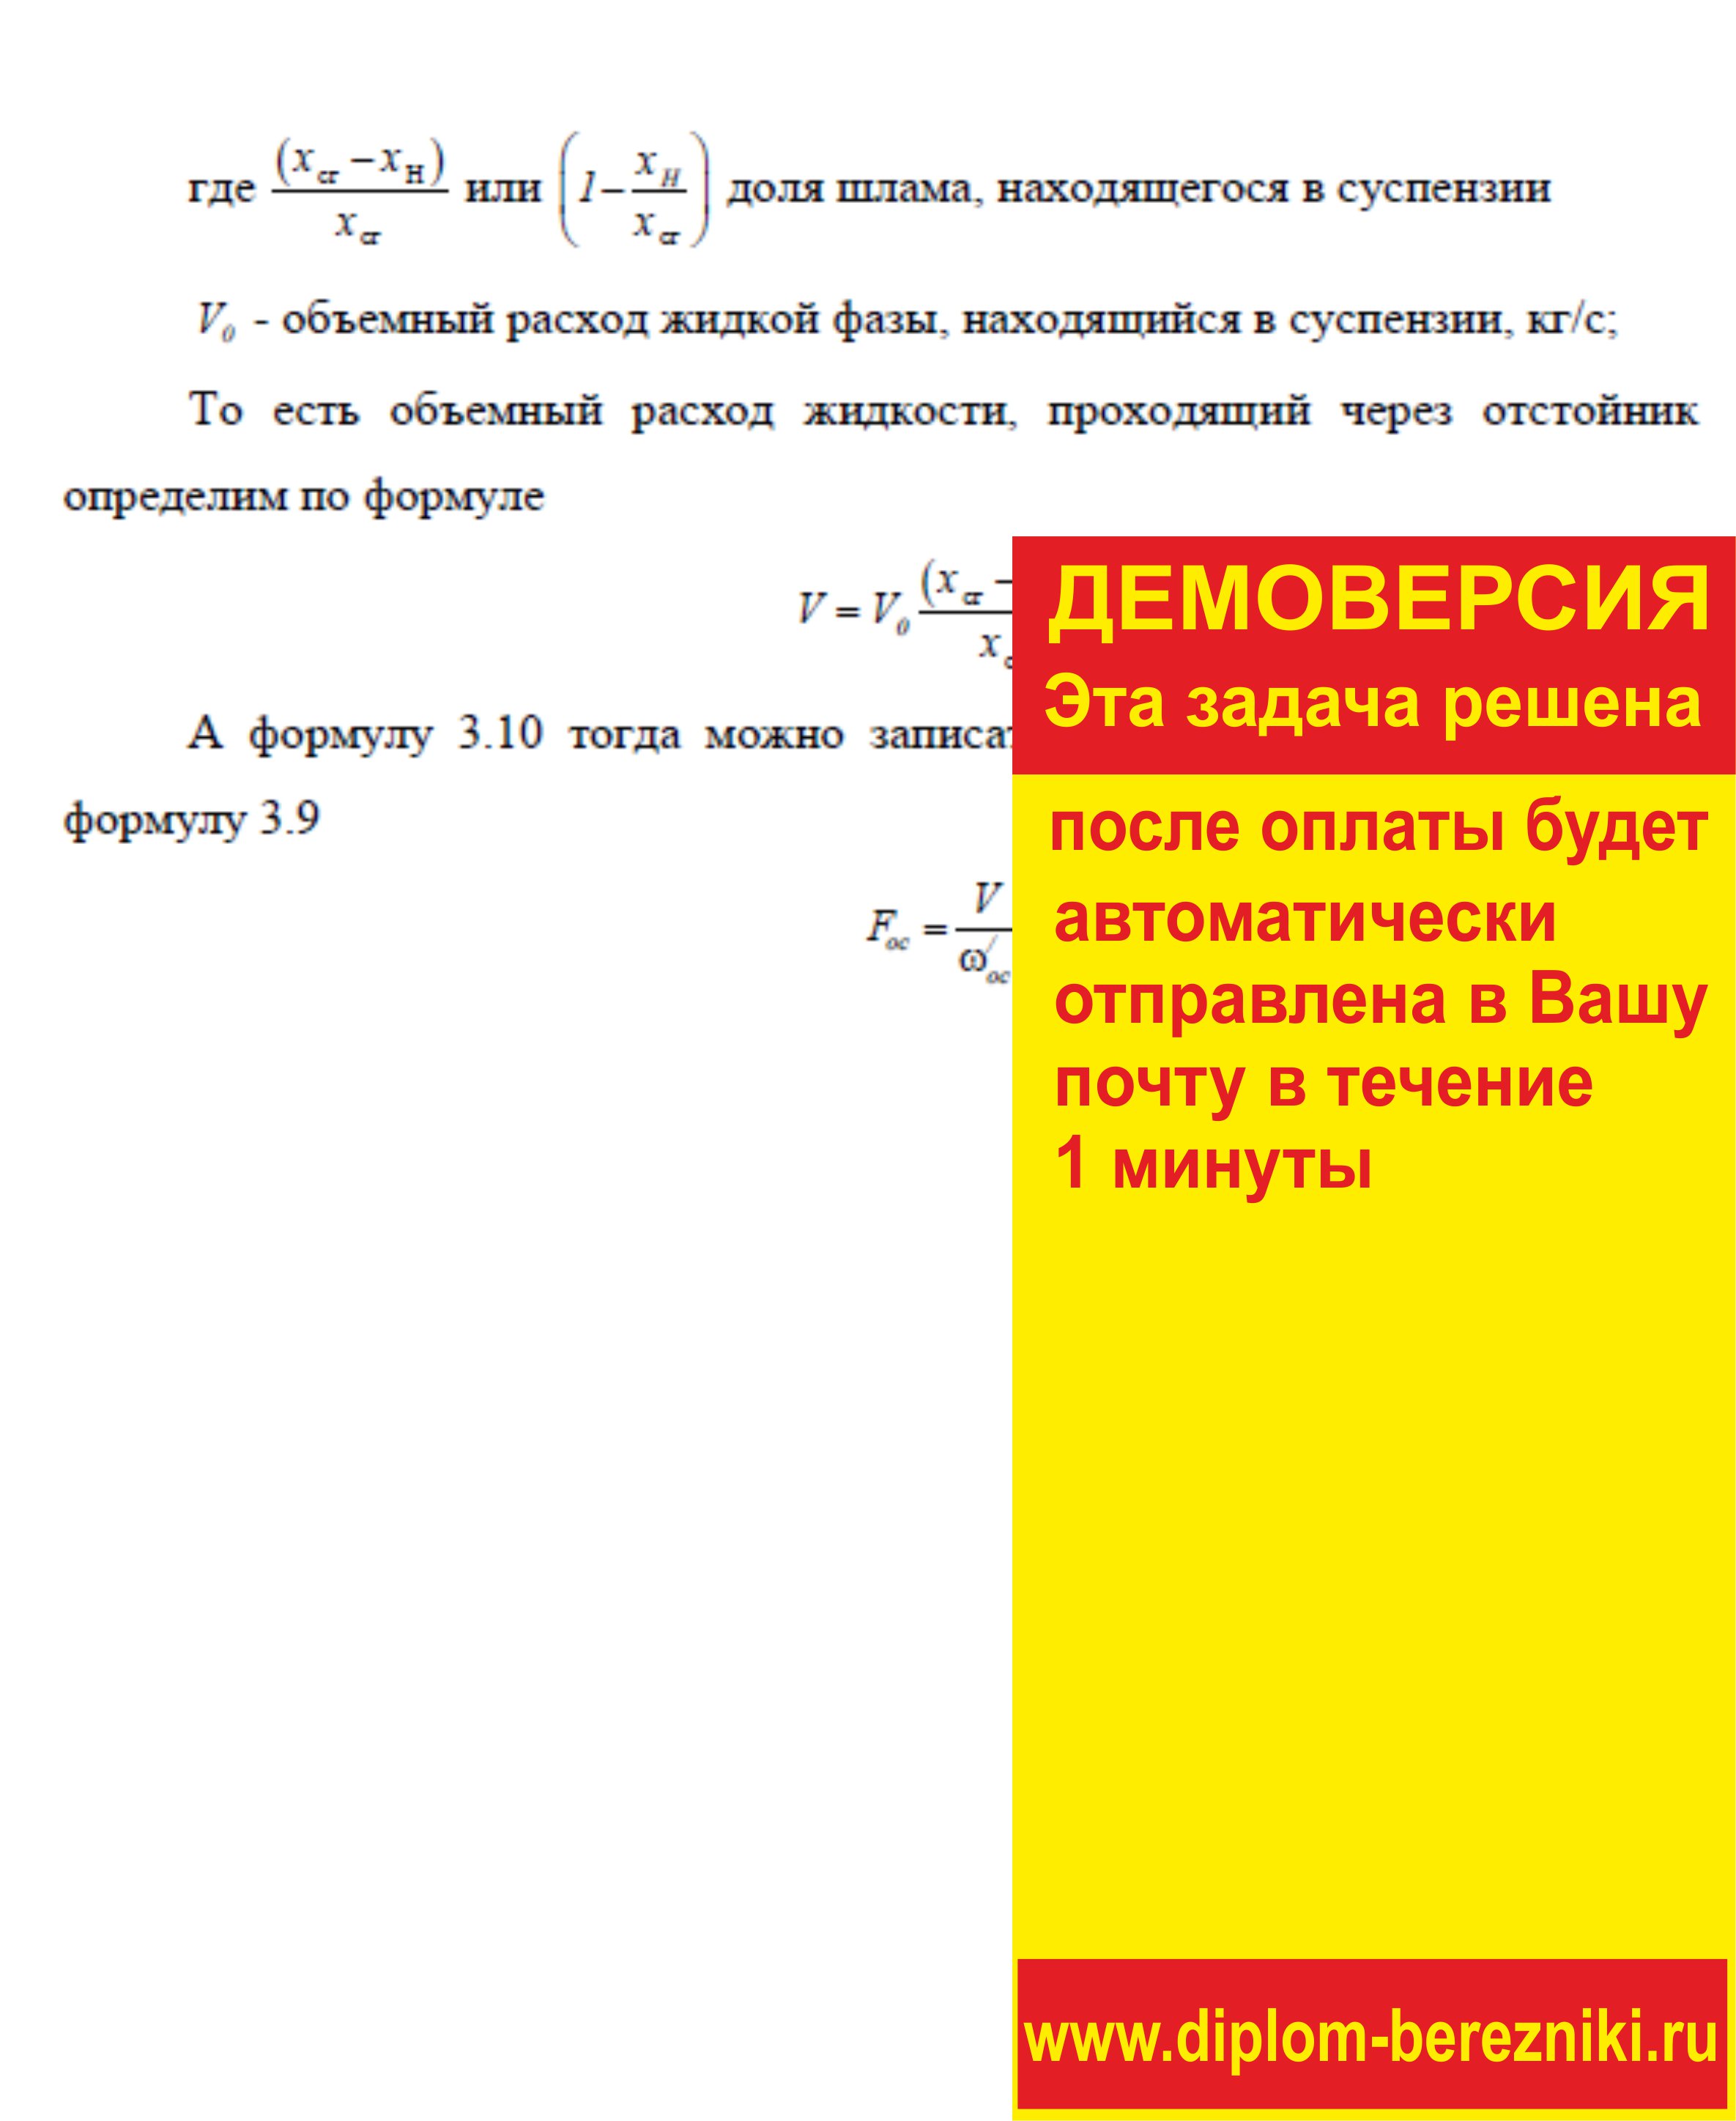 Решение задачи 3.7 по ПАХТ из задачника Павлова Романкова Носкова